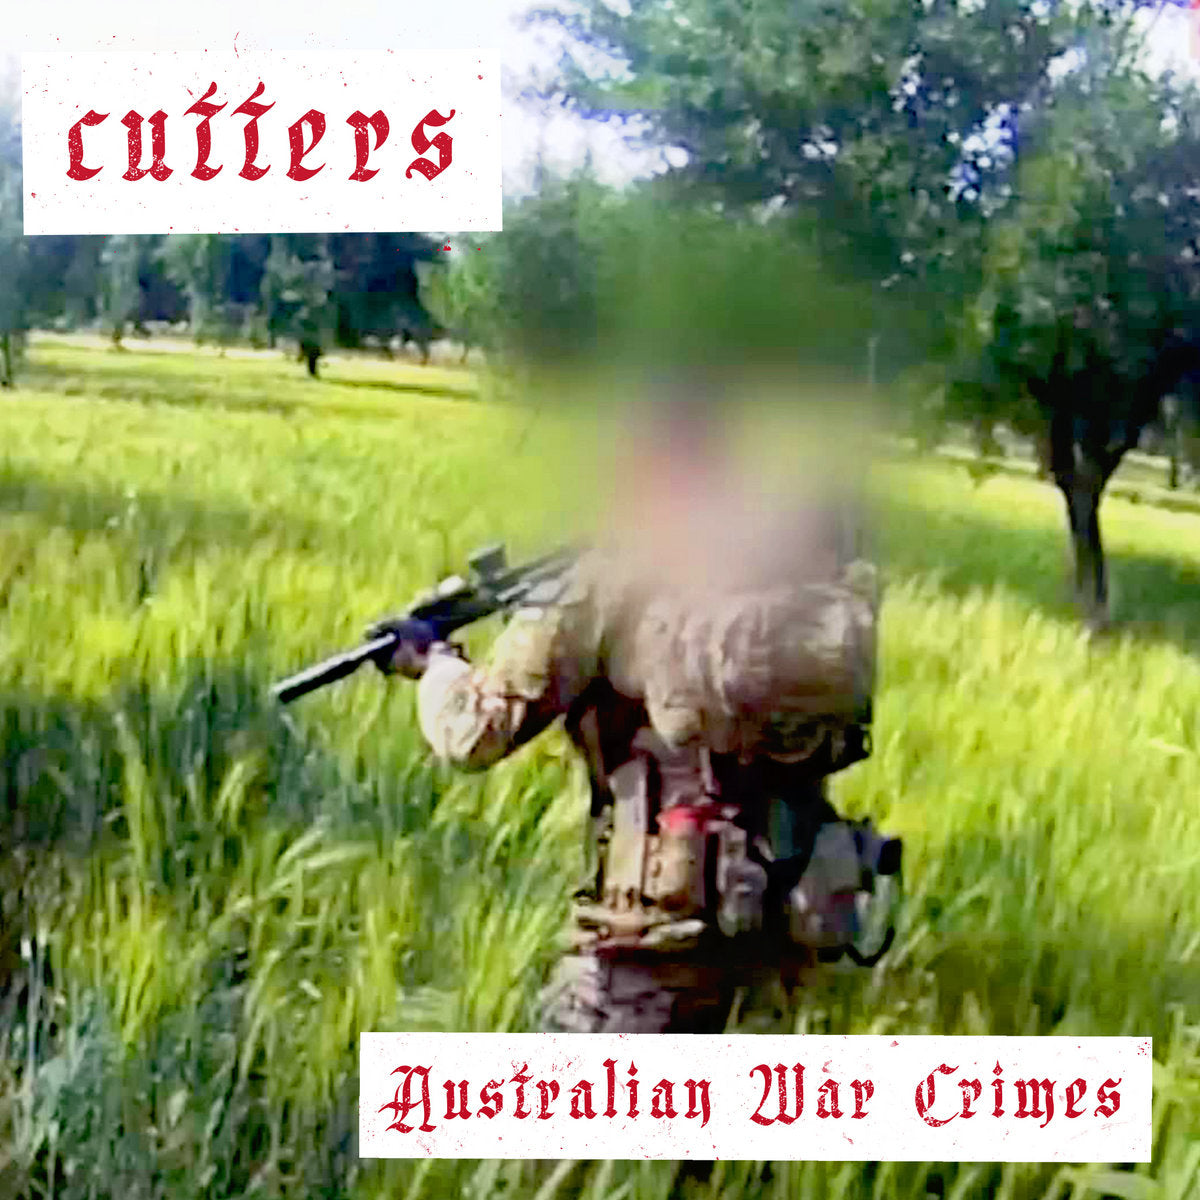 CUTTERS - "AUSTRALIAN WAR CRIMES" 7”